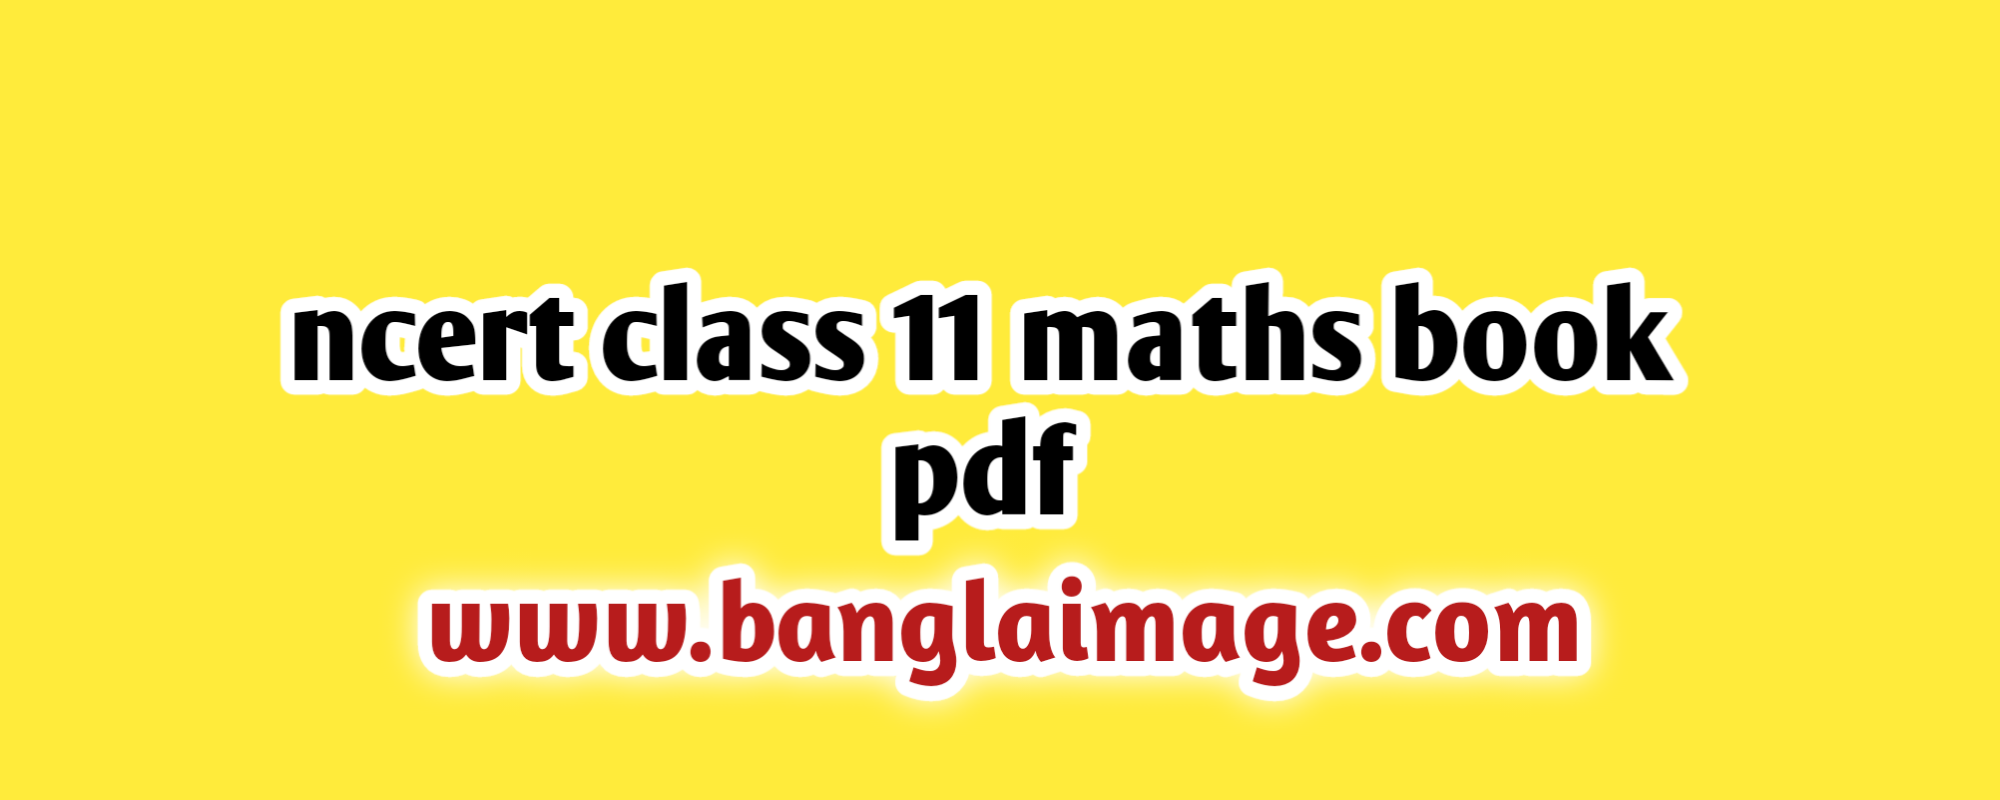 ncert class 11 maths book pdf, ncert class 11 maths book pdf download in hindi, ncert class 11 maths book pdf up board, ncert class 11 maths book pdf in english